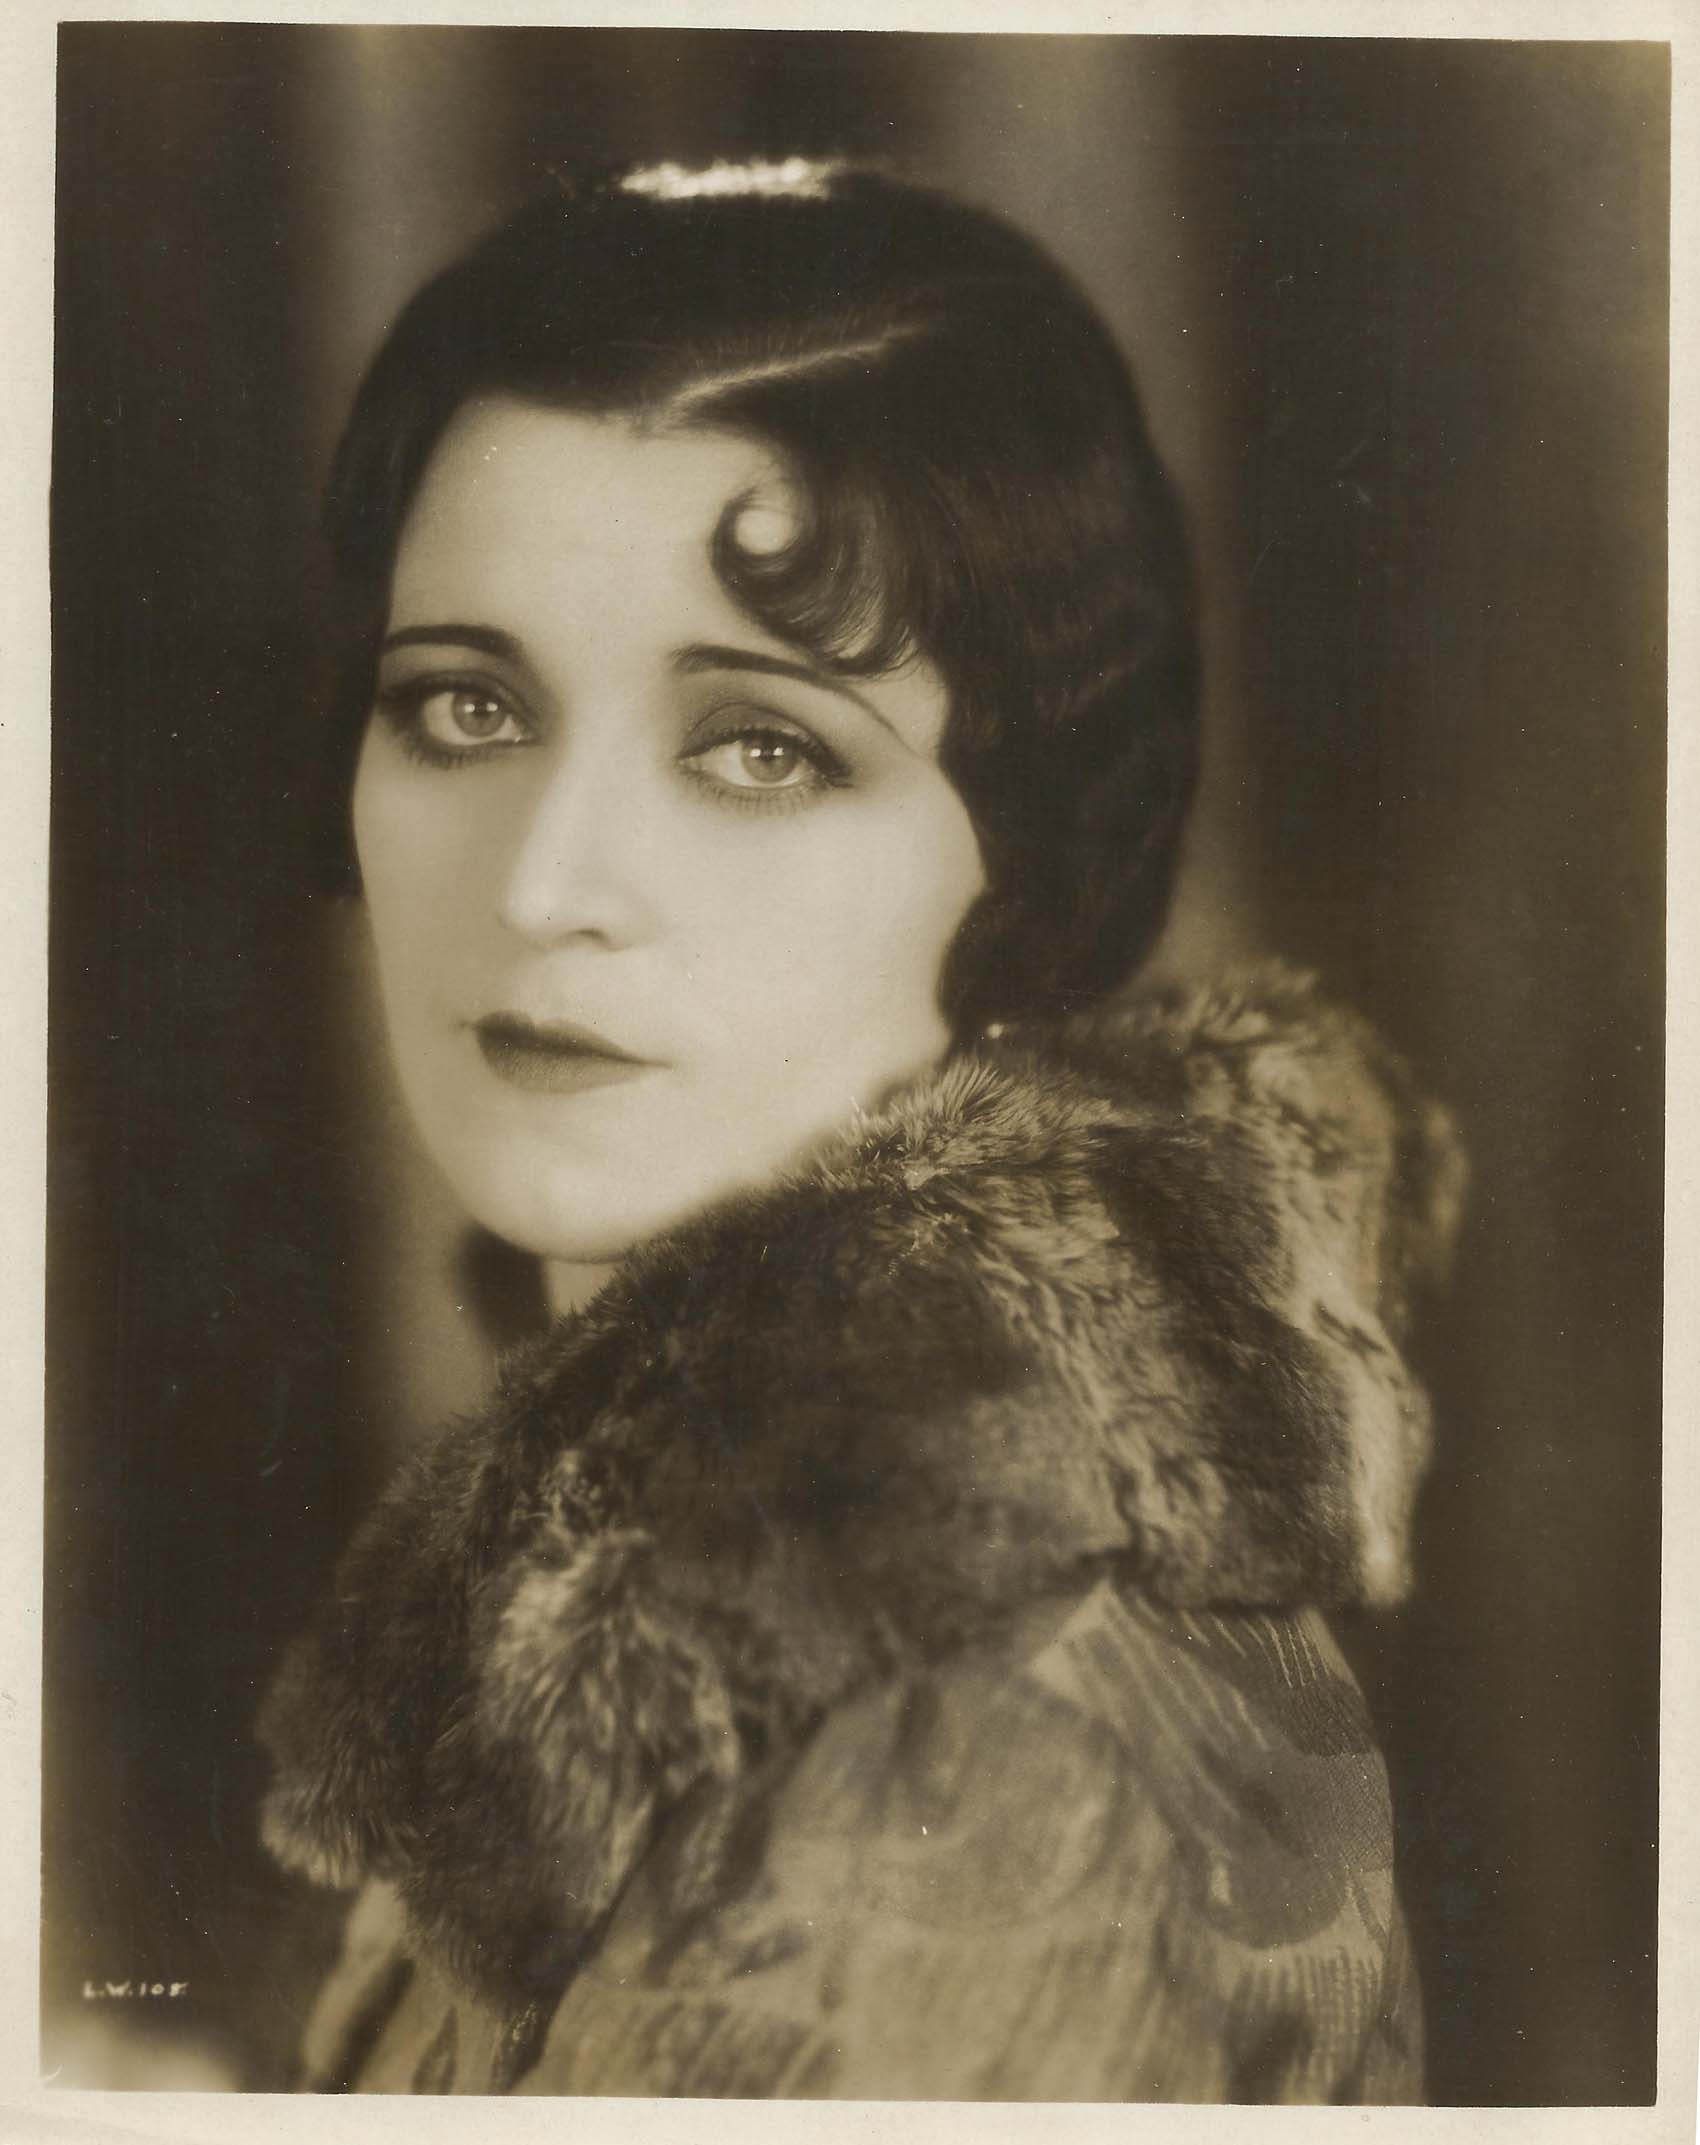 CORINNE GRIFFITH - Original Vintage PORTRAIT - SILENT MOVIE 1920's | eBay